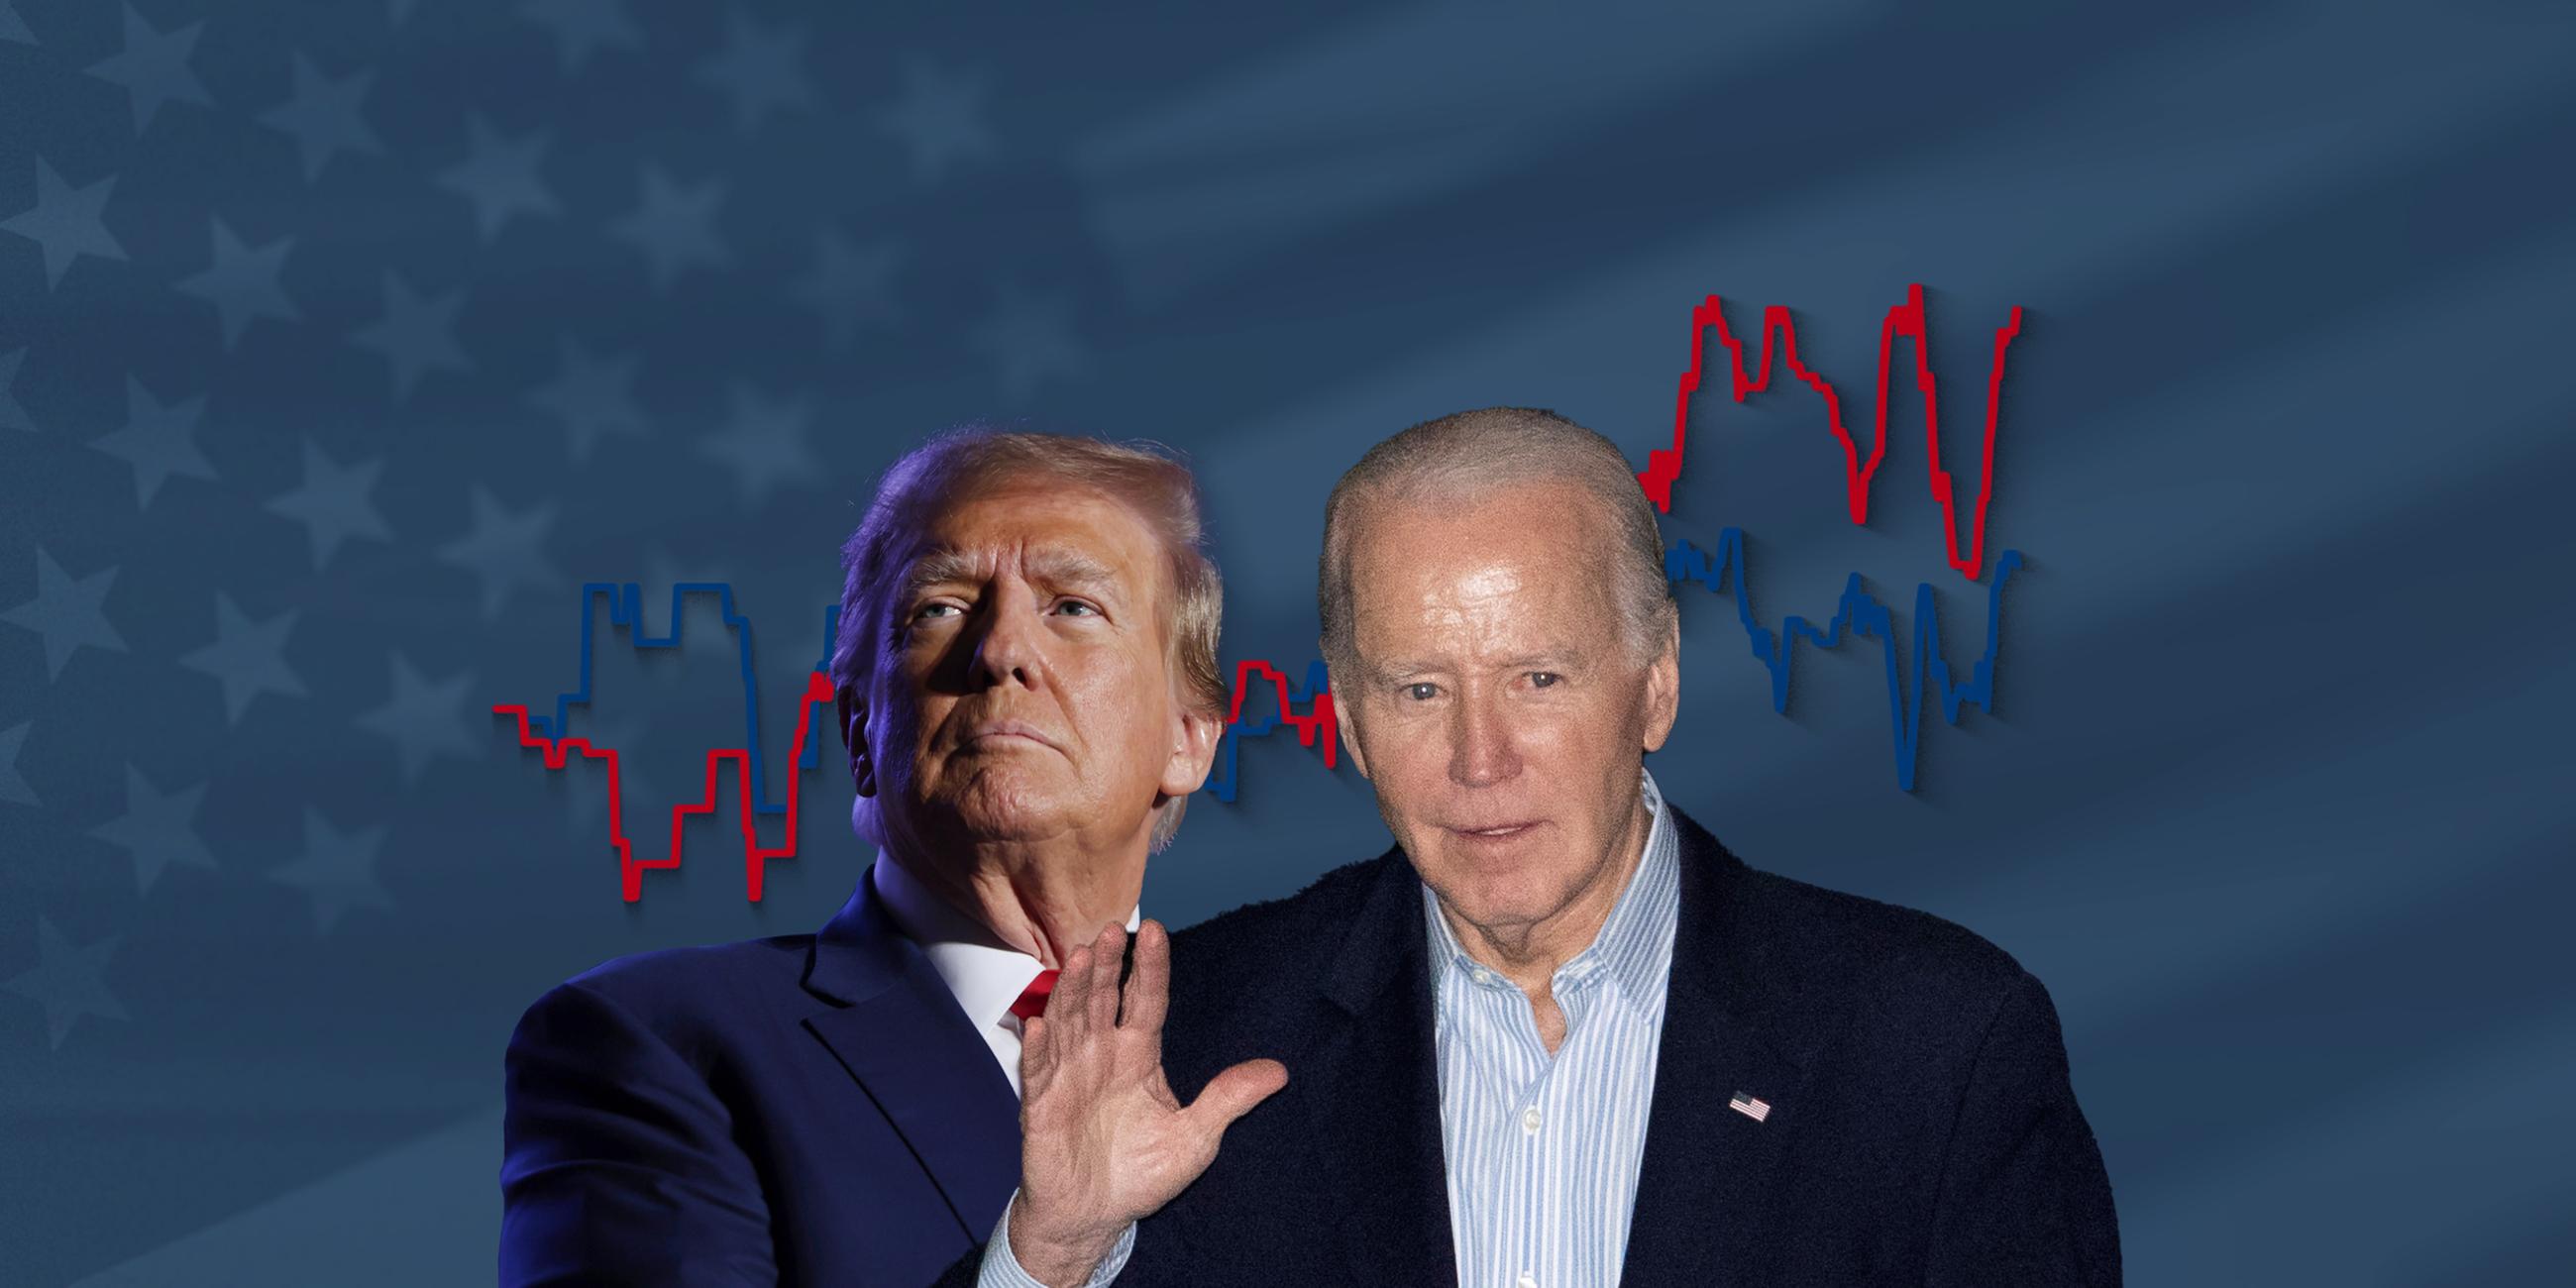 Donald Trump und Joe Biden, dahinter ein Liniendiagramm mit ihren Umfragewerten